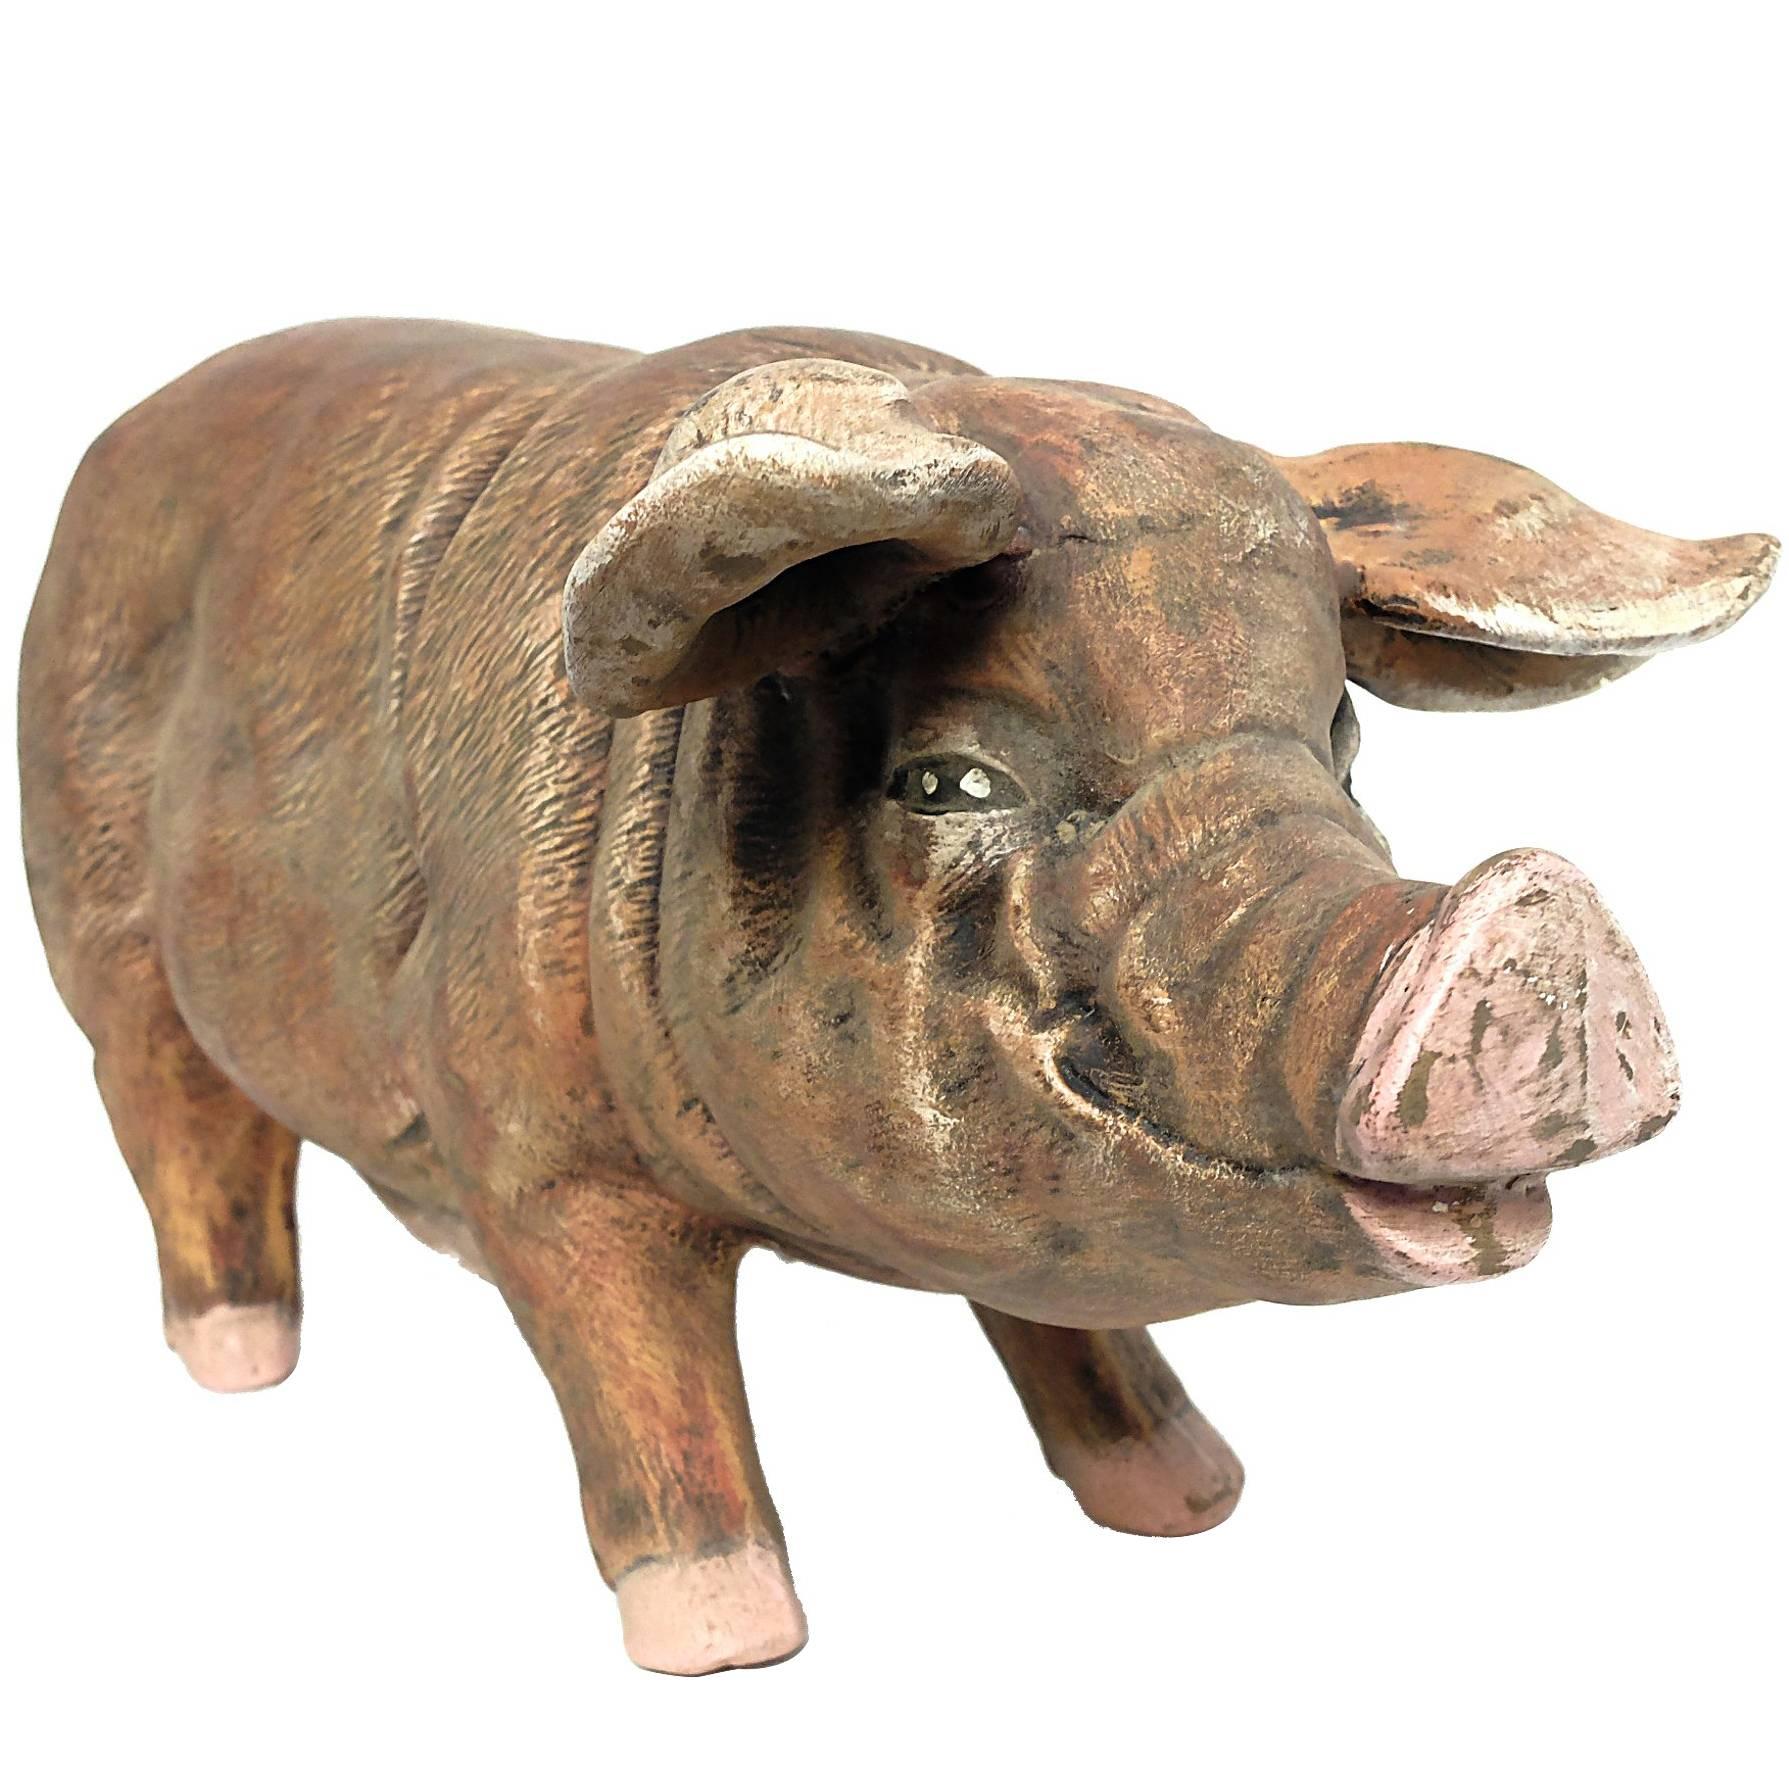 Italian Terracotta Sculpture Depicting a Pig